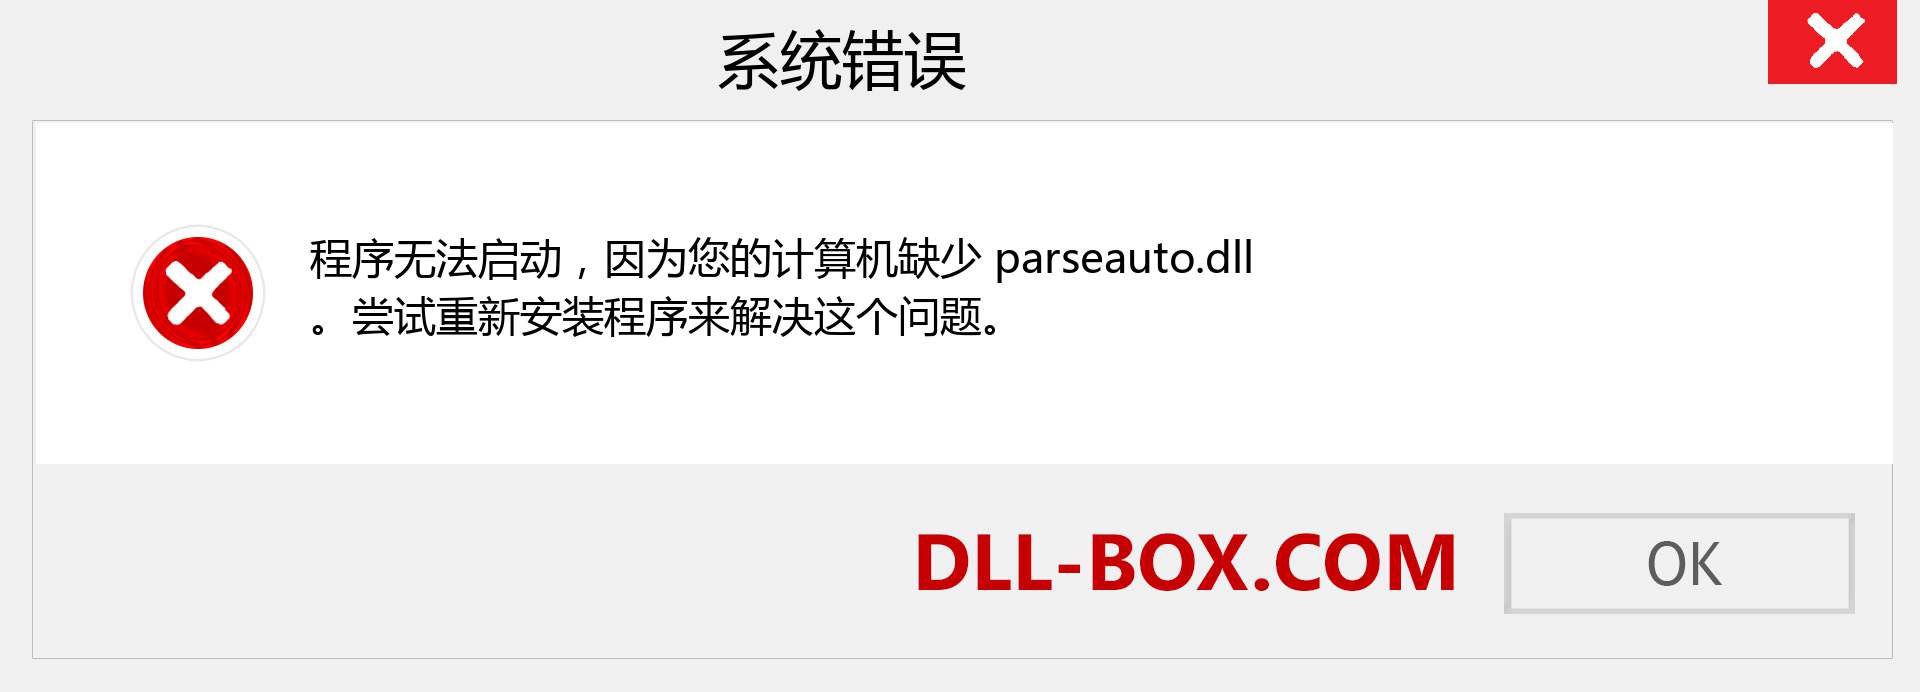 parseauto.dll 文件丢失？。 适用于 Windows 7、8、10 的下载 - 修复 Windows、照片、图像上的 parseauto dll 丢失错误